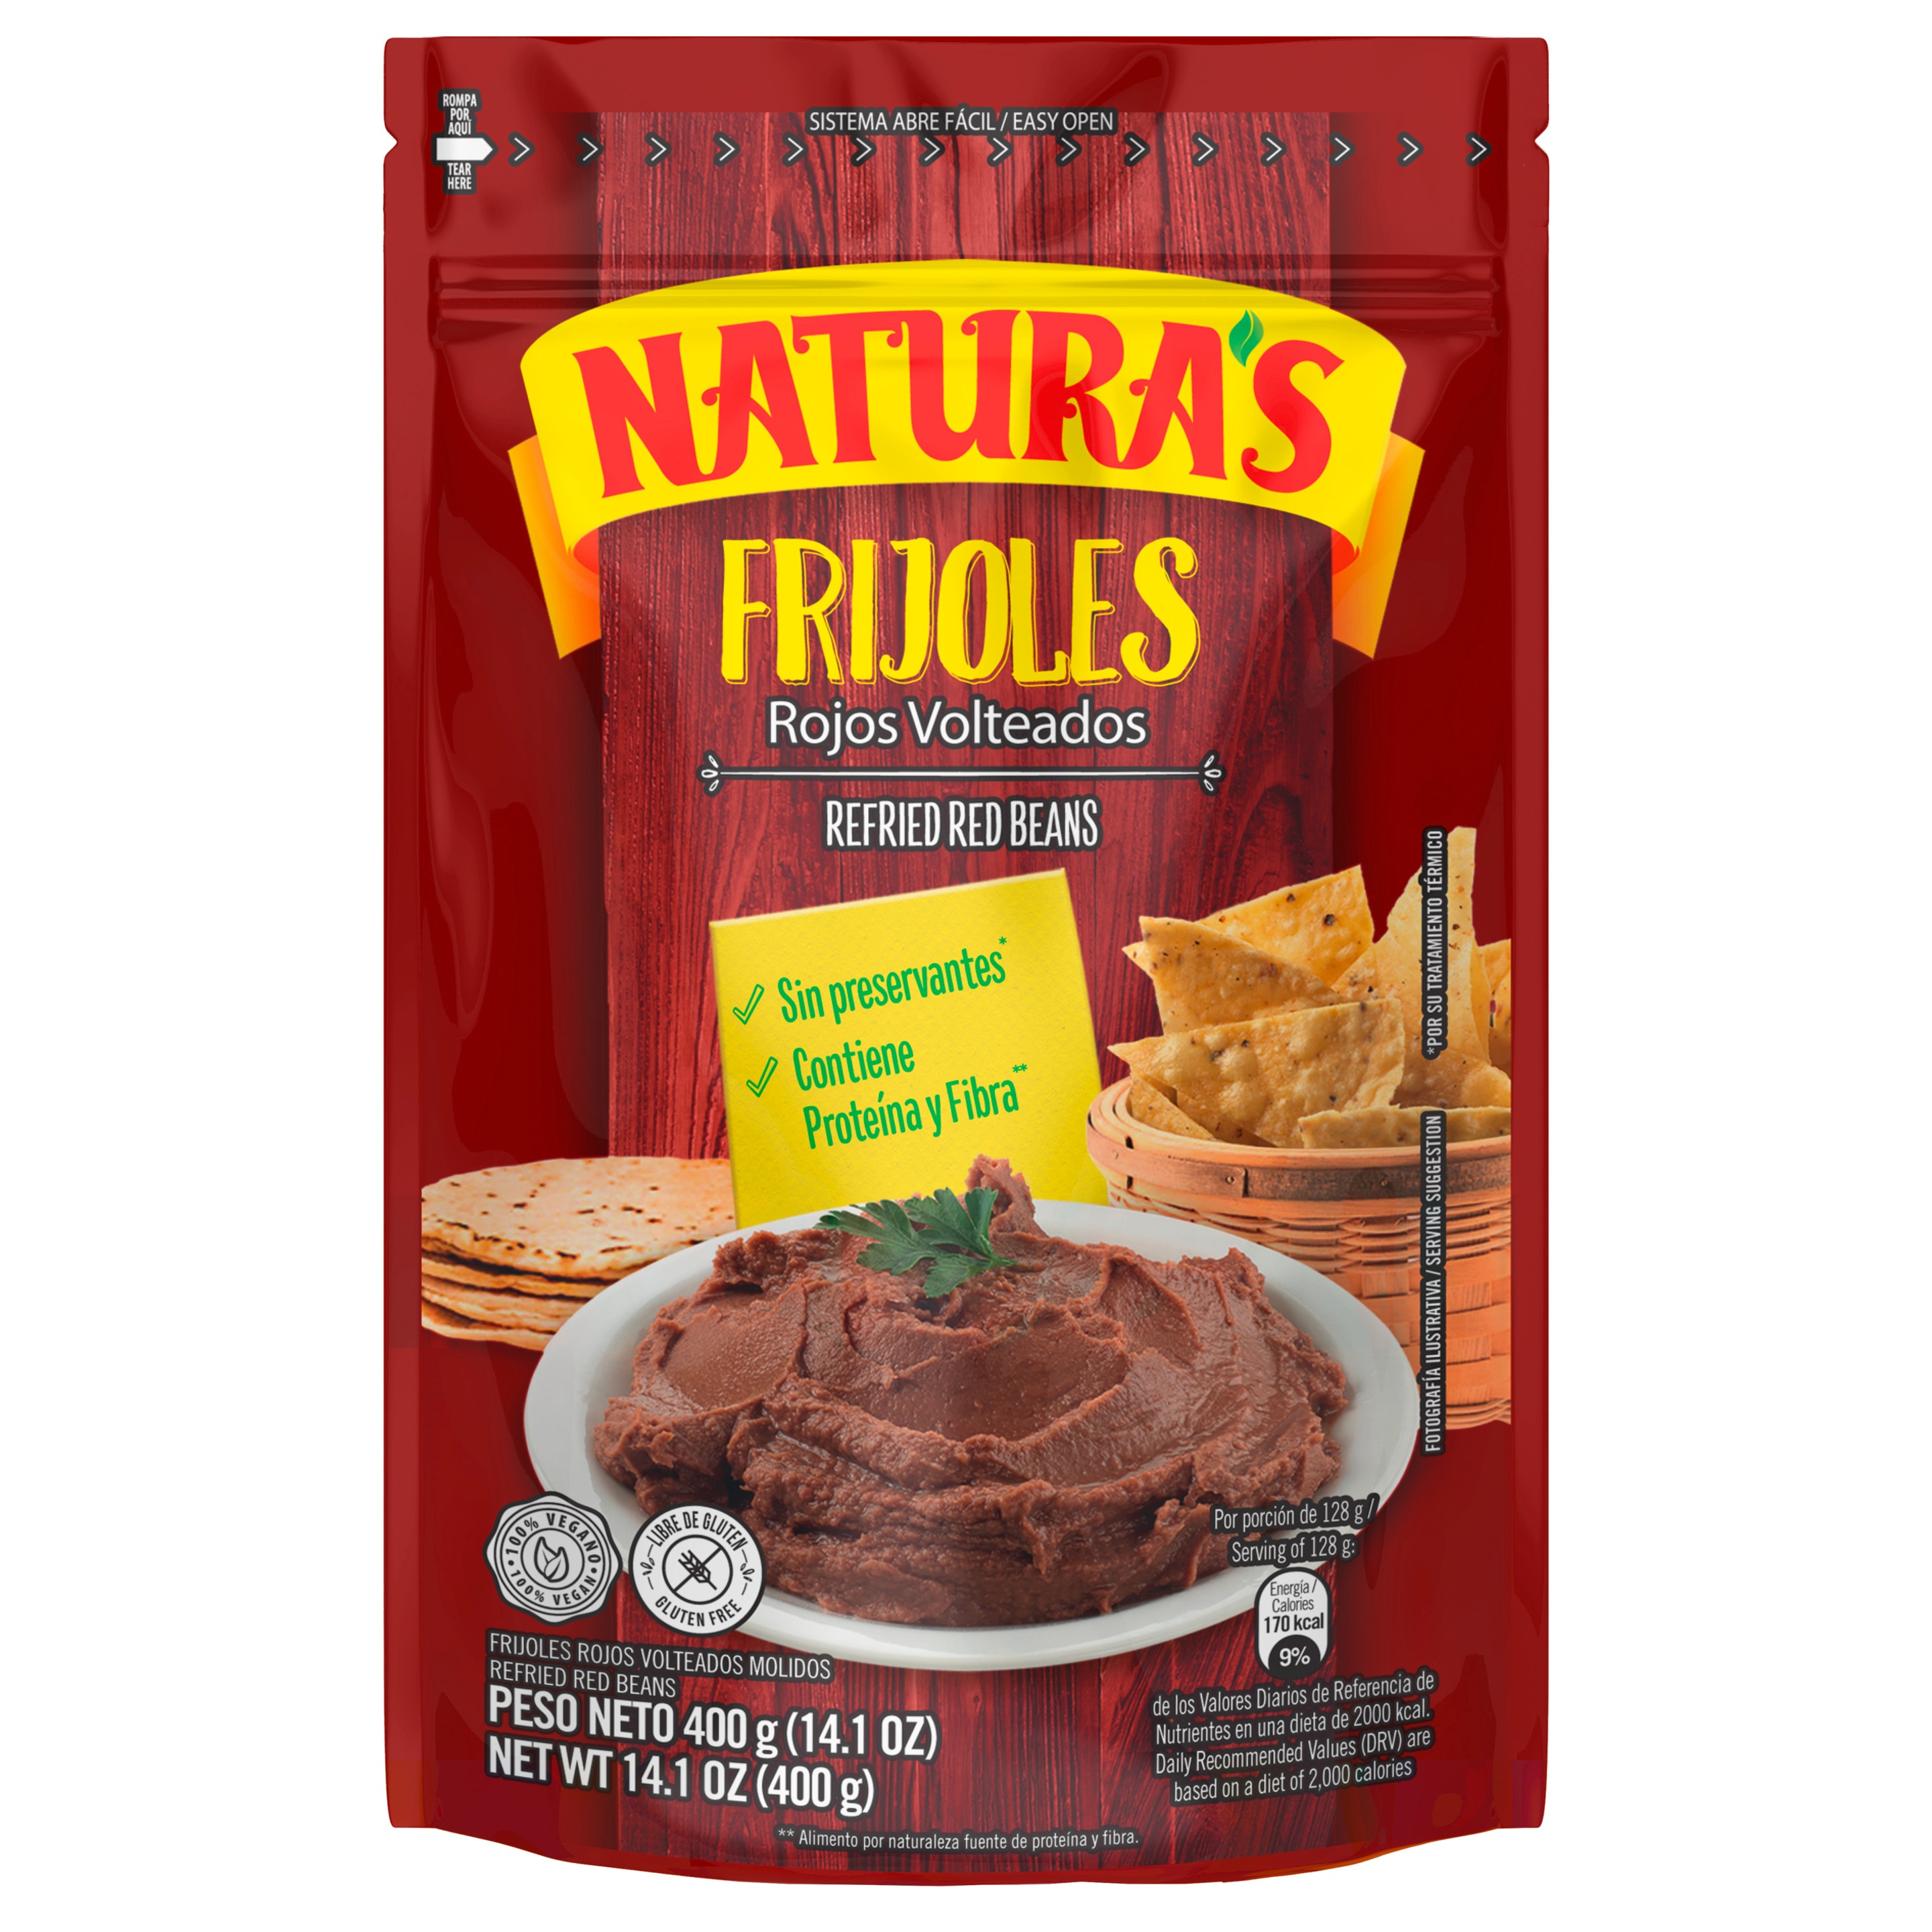 Naturas Frijoles Refried Red Beans packshot